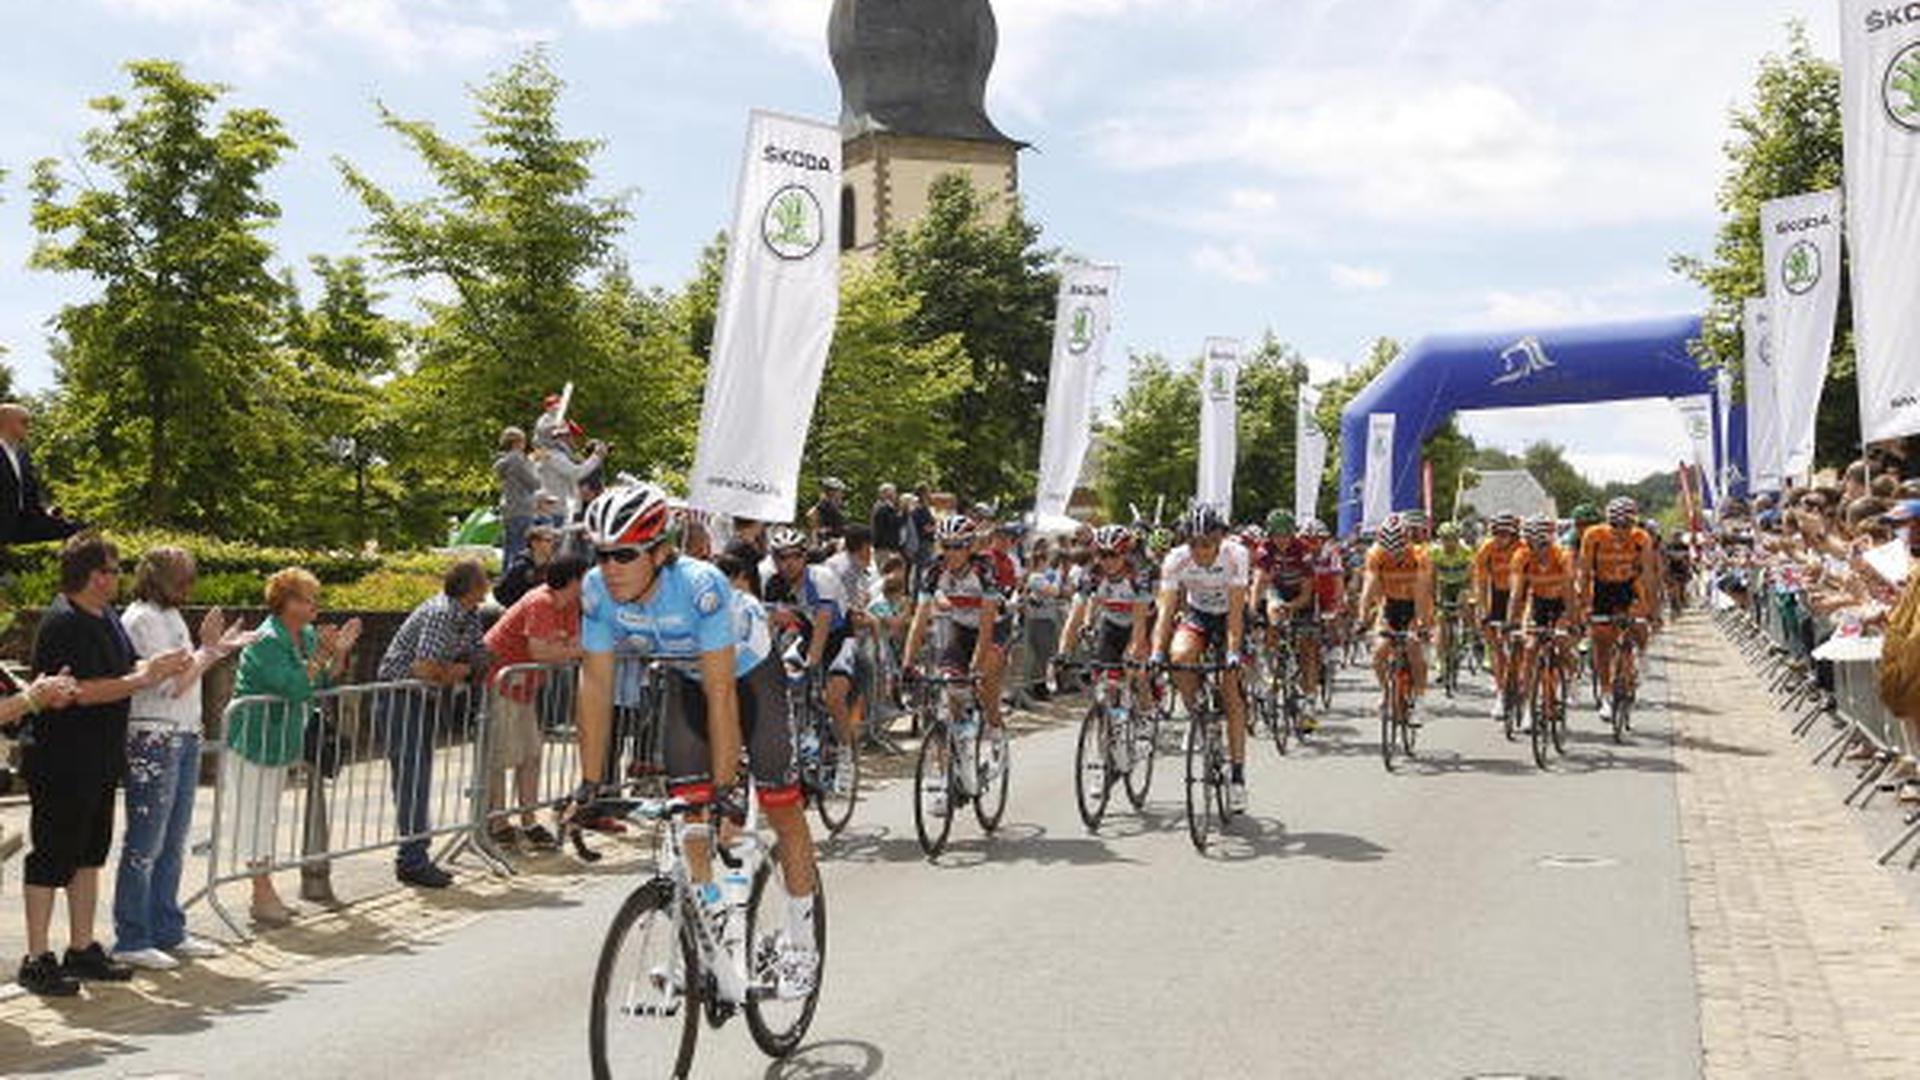 Tour de Luxembourg 2013 - 4.Etappe - Mersch-Luxemburg - Start zur letzten Etappe in Mersch